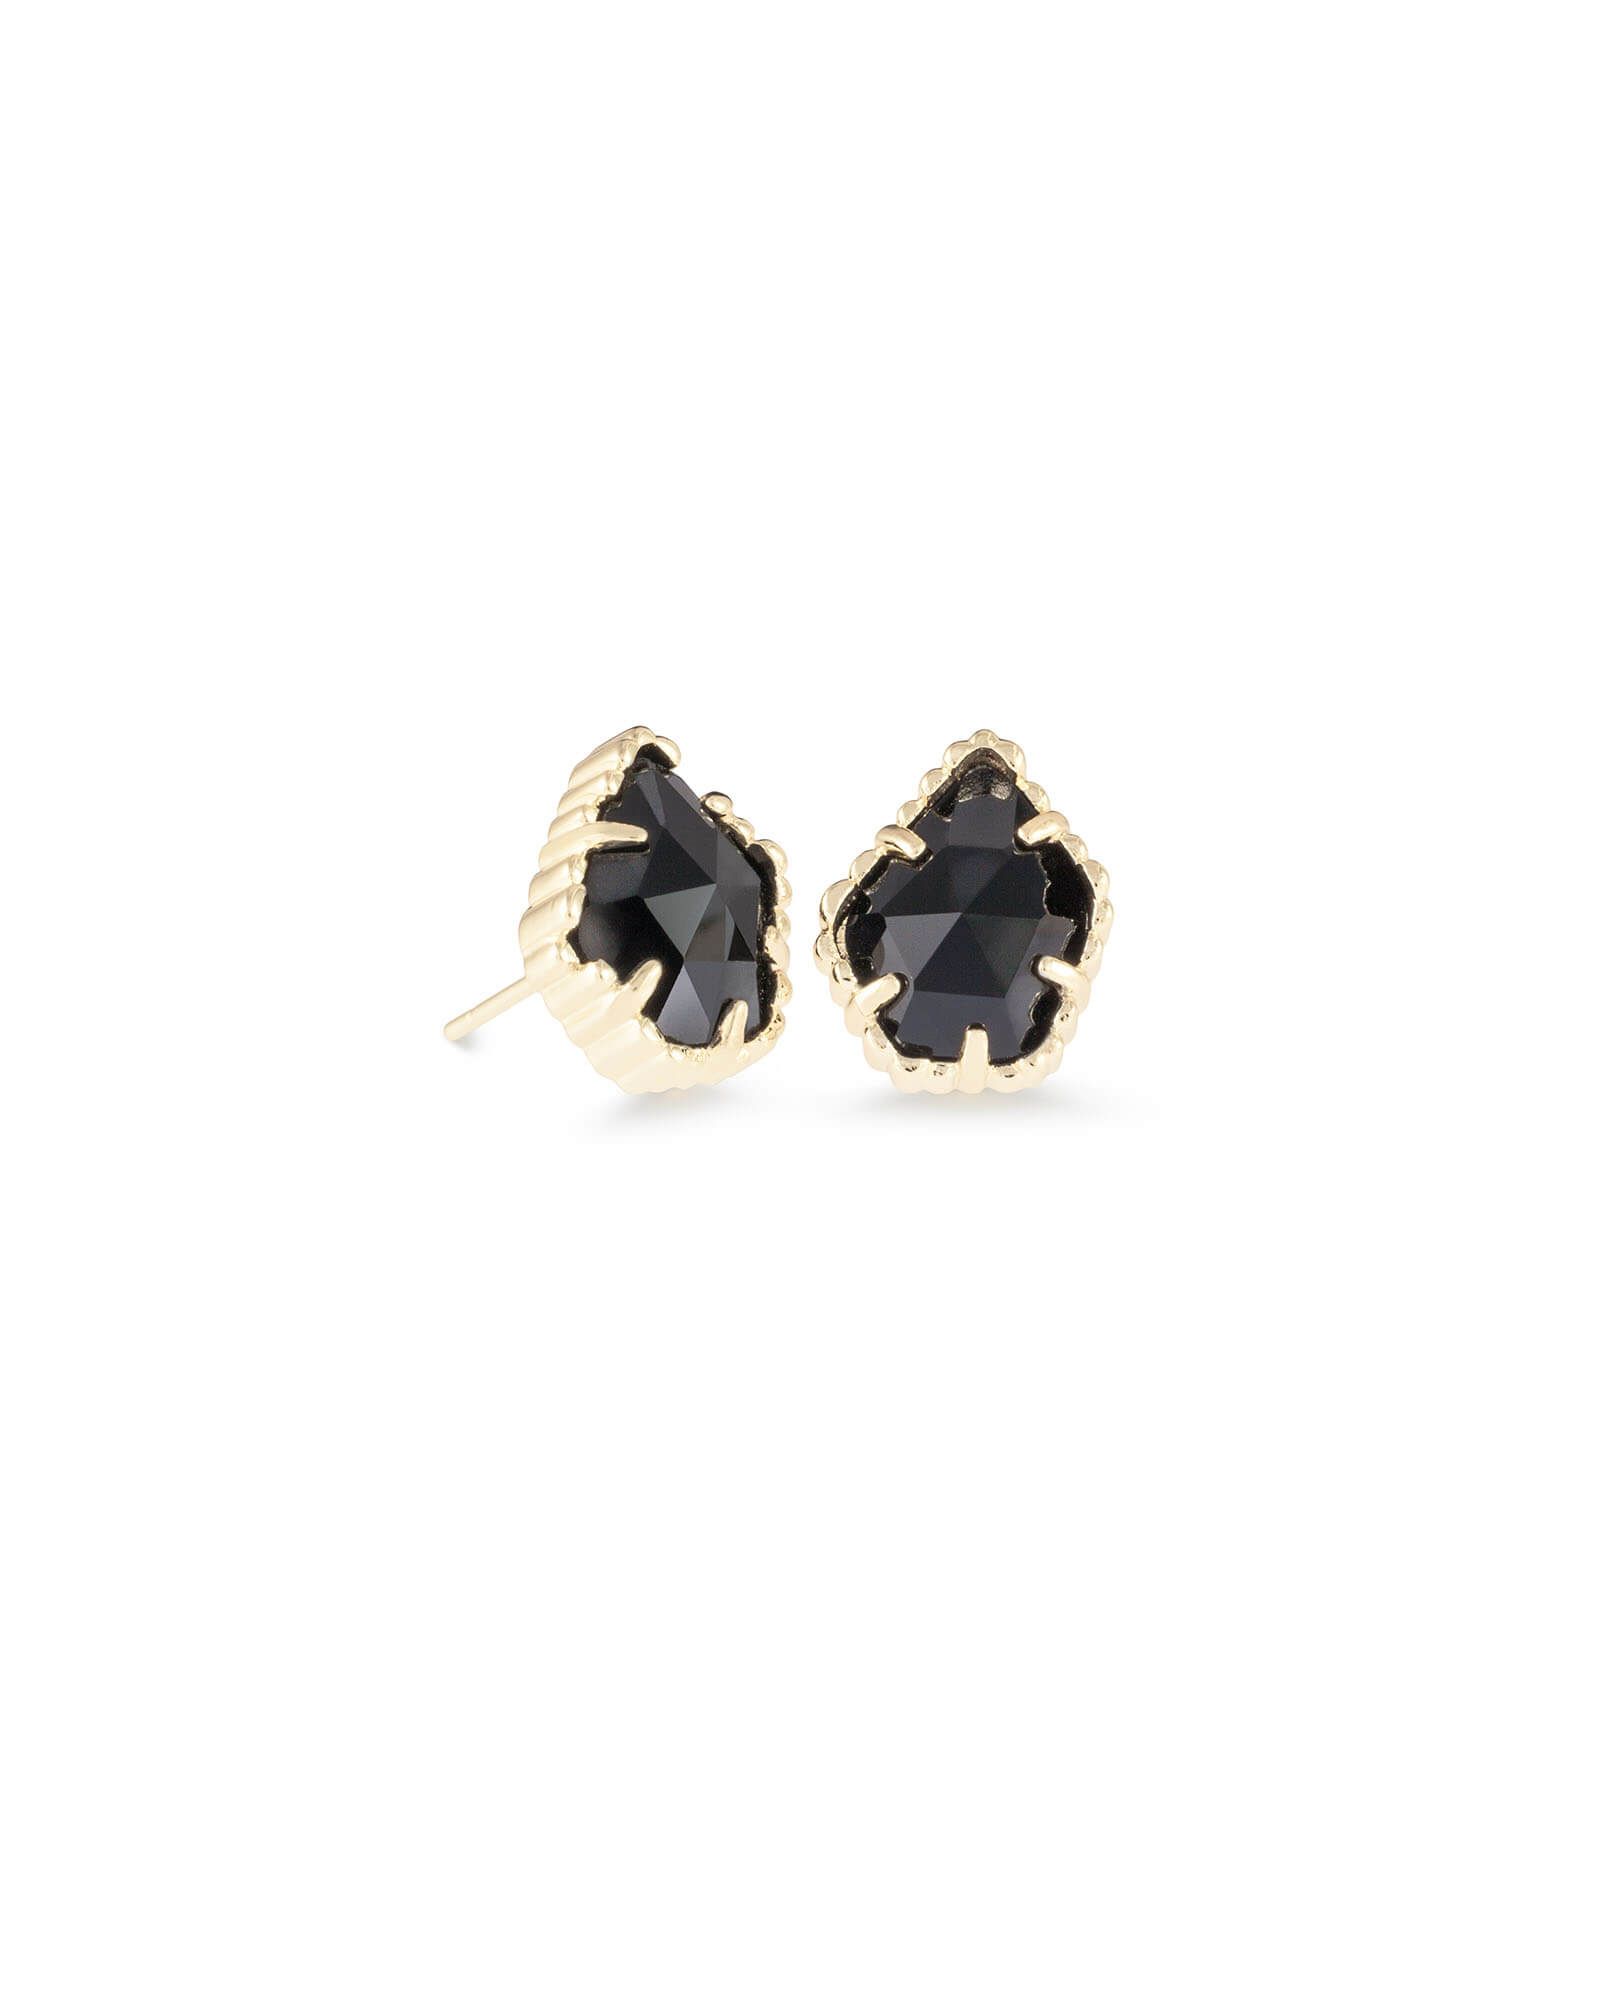 Tessa Gold Stud Earrings in Black | Kendra Scott